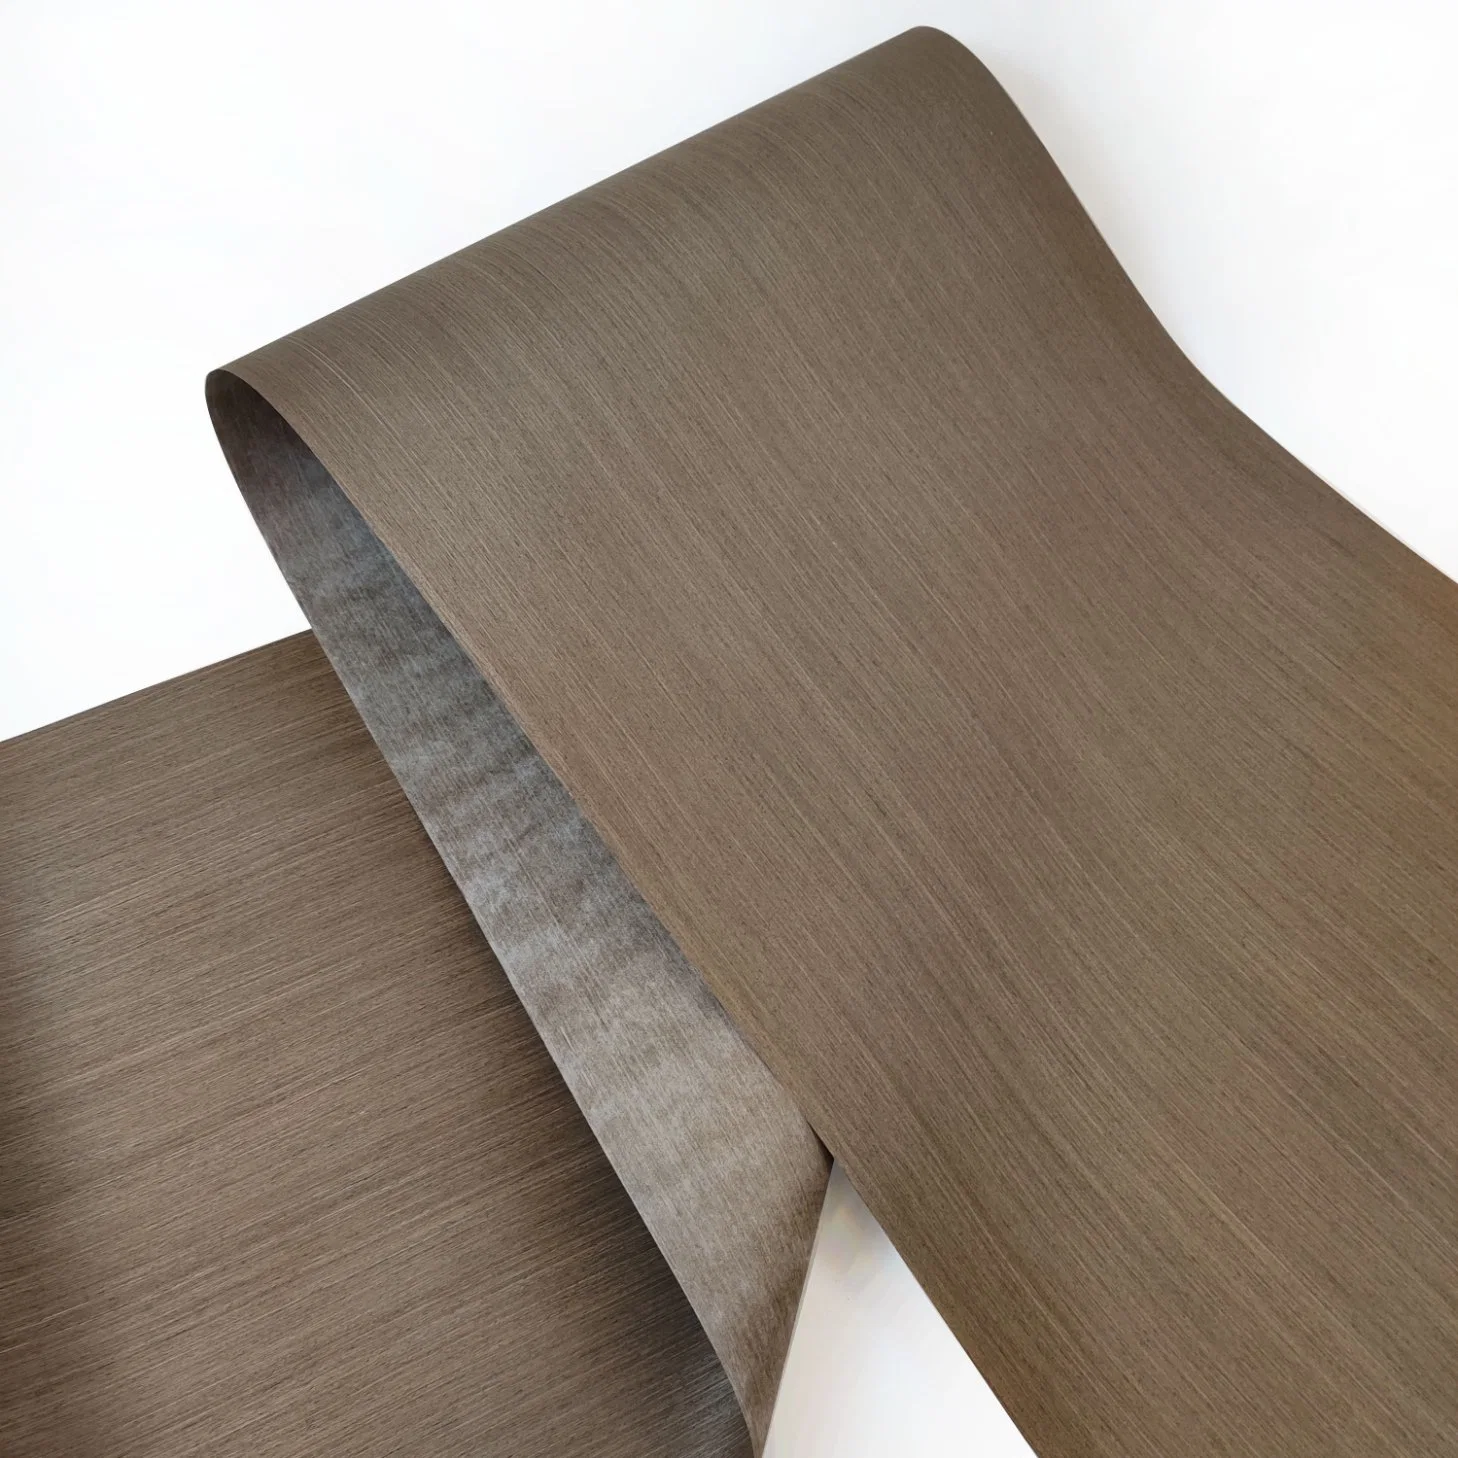 Reconstitute Recon Veneer Wood Wall Veneers for Furniture Plywood